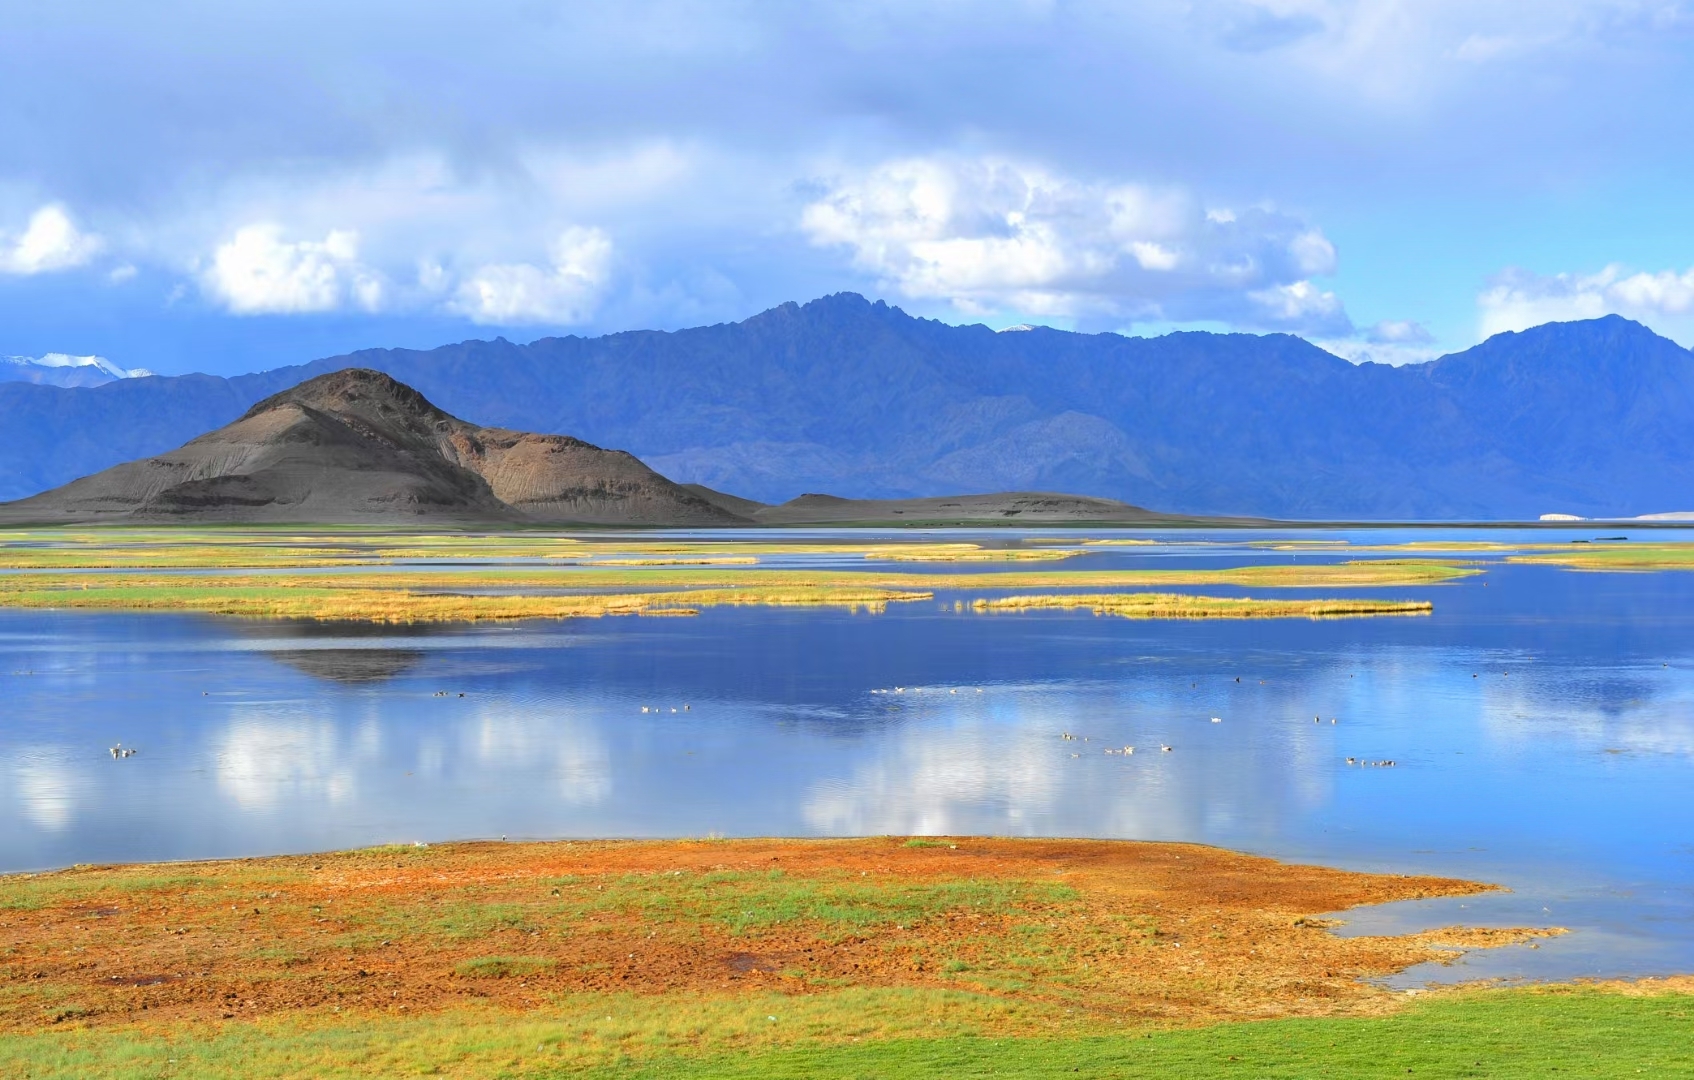 班公湖又称措木昂拉仁波，藏语意为“长脖子天鹅”，这里空气清新，水质清透，每年都有很多游客前往欣赏其美